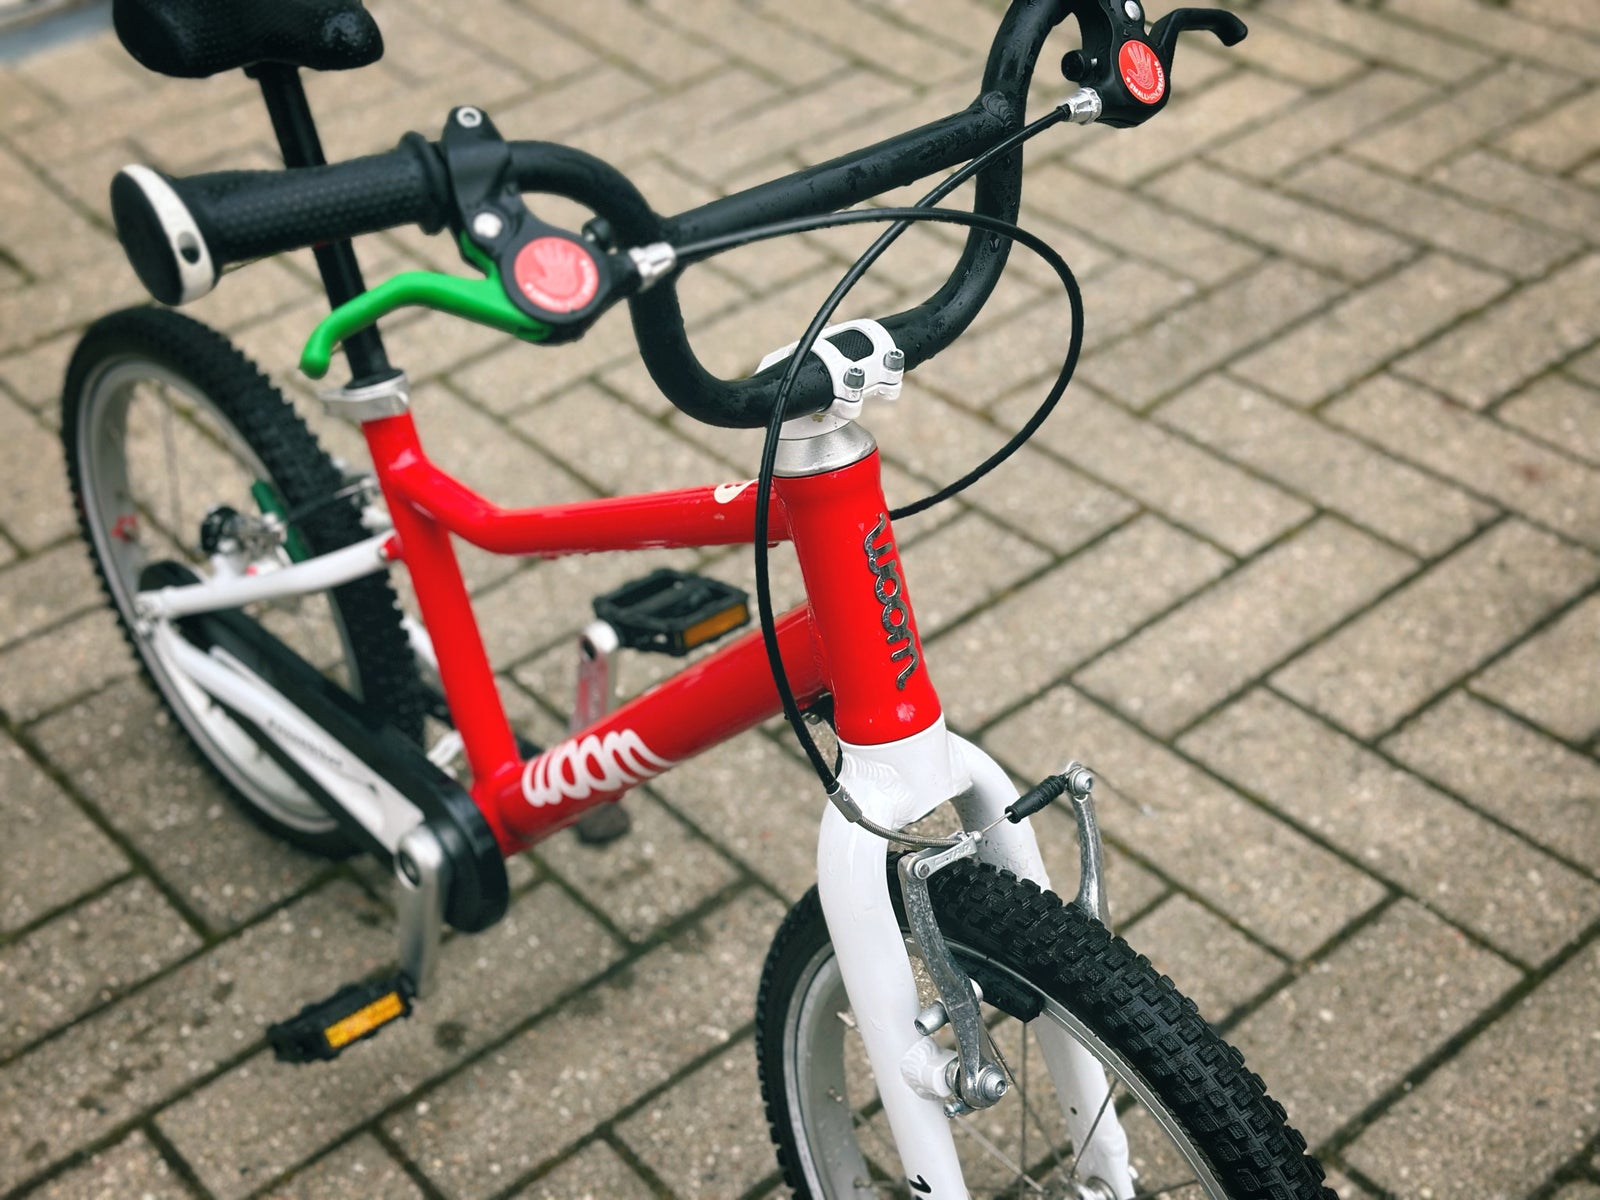 Unisex børnecykel, racercykel, andet mærke